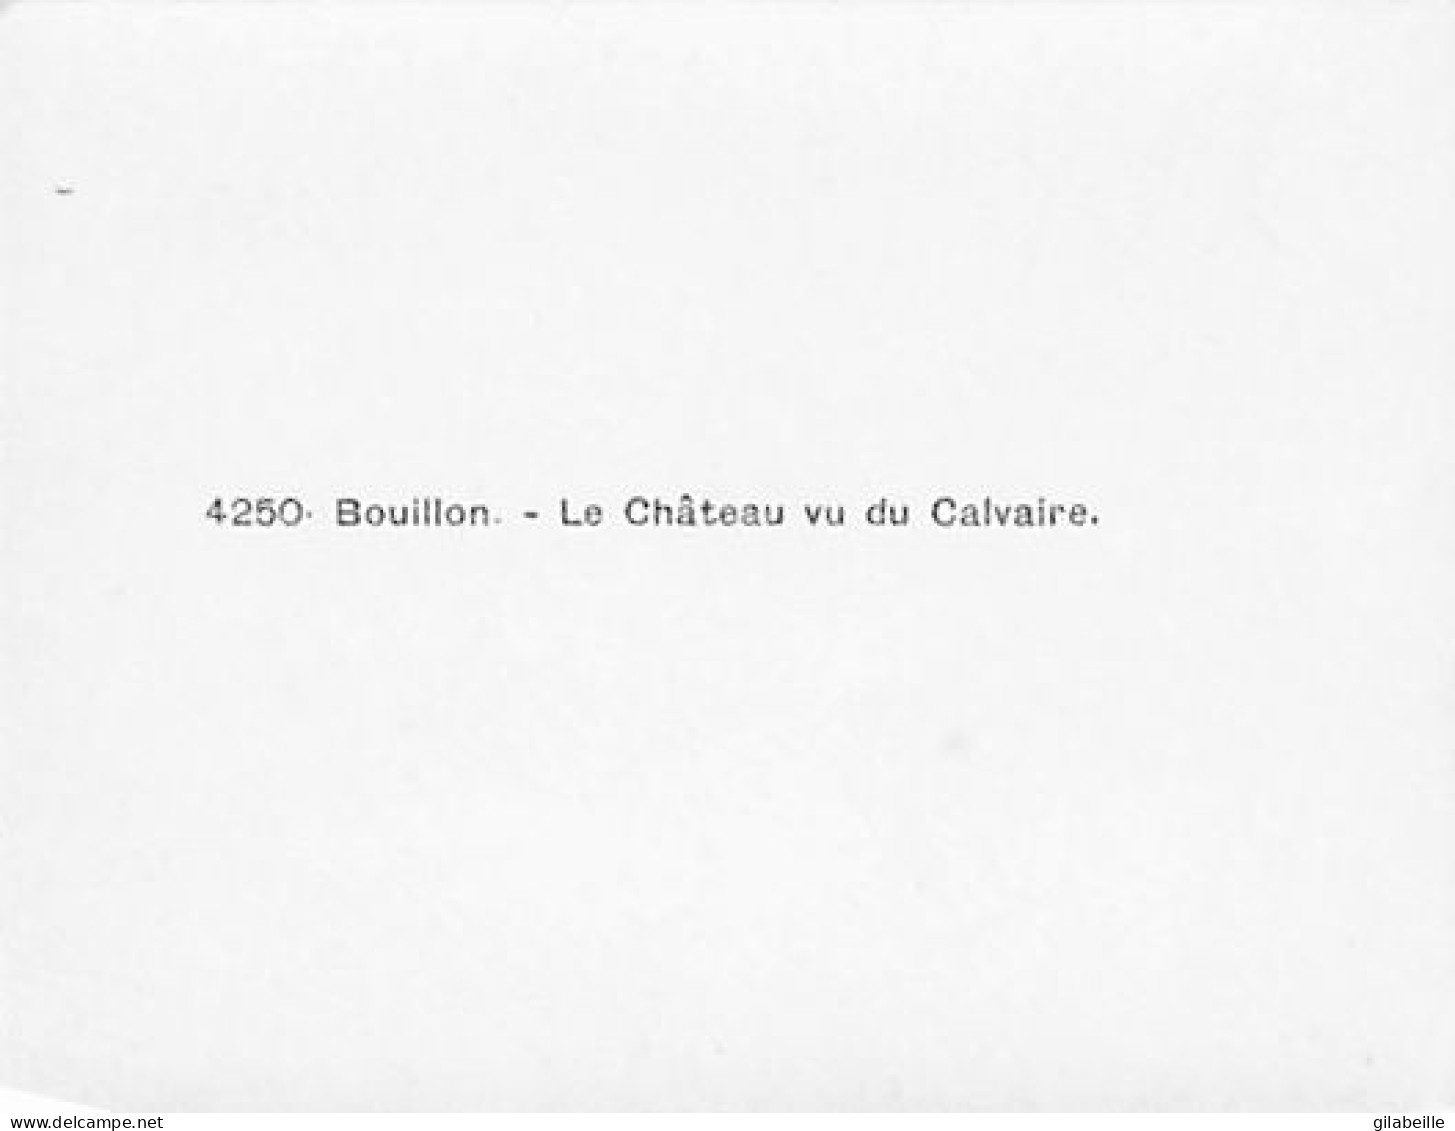 BOUILLON - lot 10 photos - format 9.0 x 7.0 cm